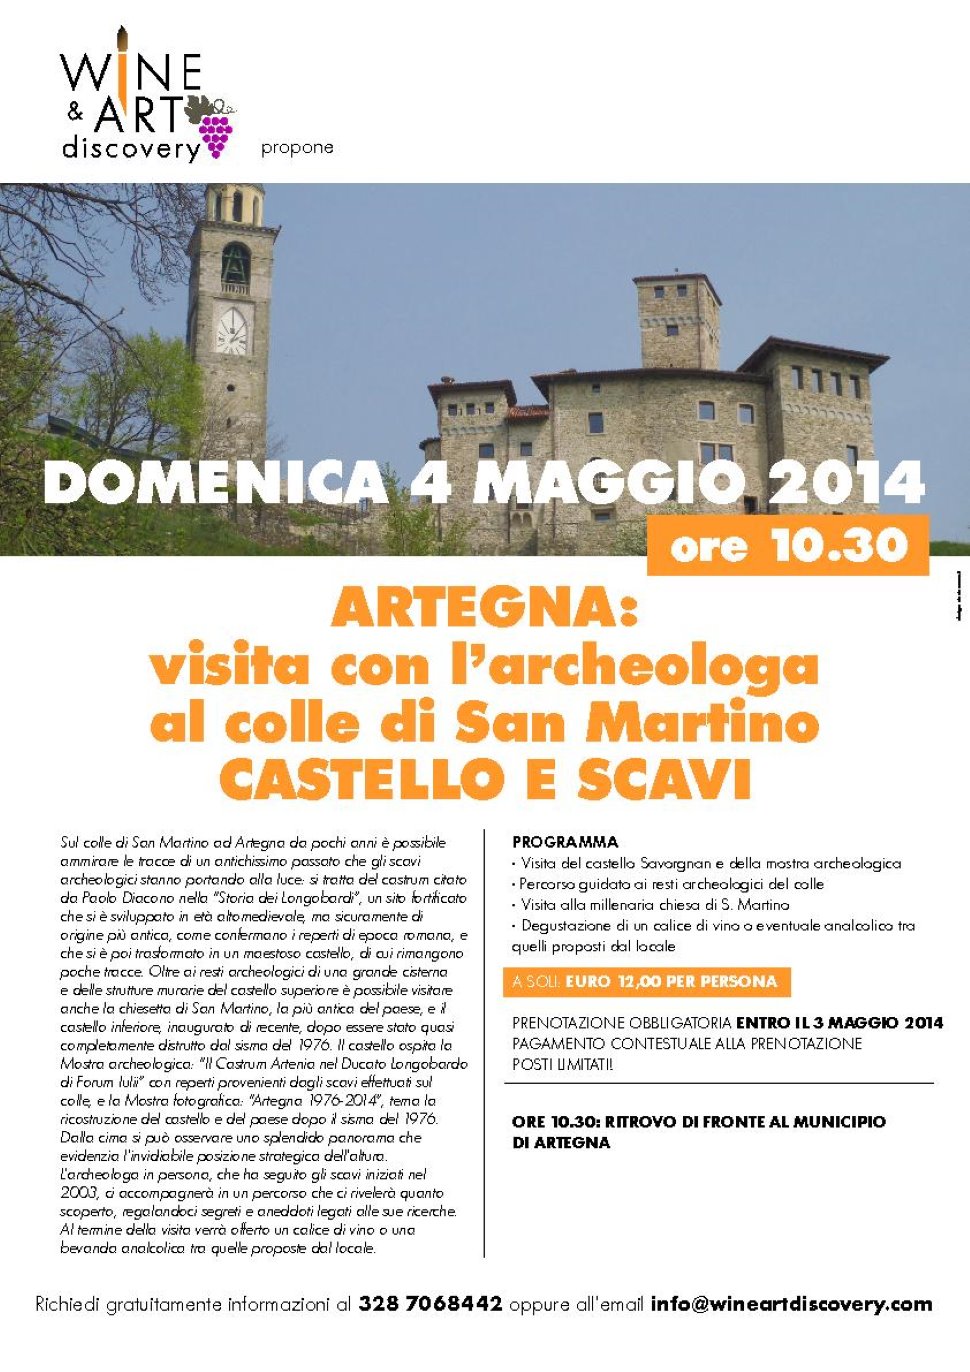 Artegna: visita al castello e scavi colle di S. Martino